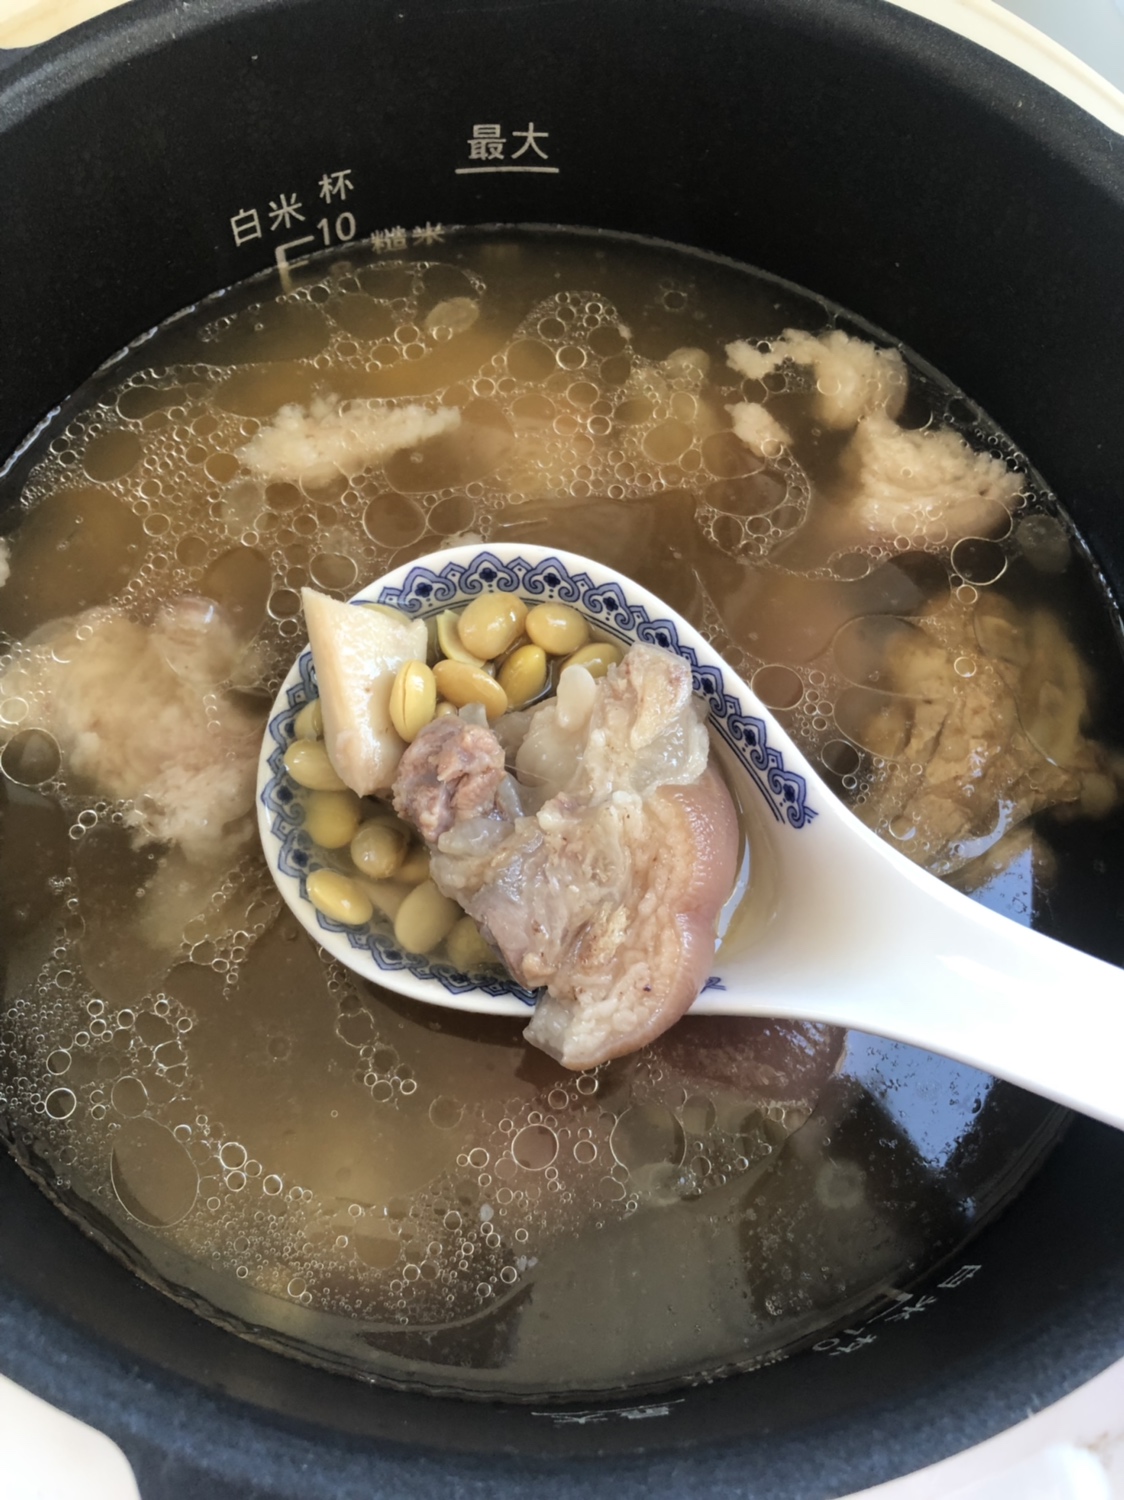 猪蹄炖黄豆汤（适合全家新手也能随意做）这也是超级赞的开奶汤哦